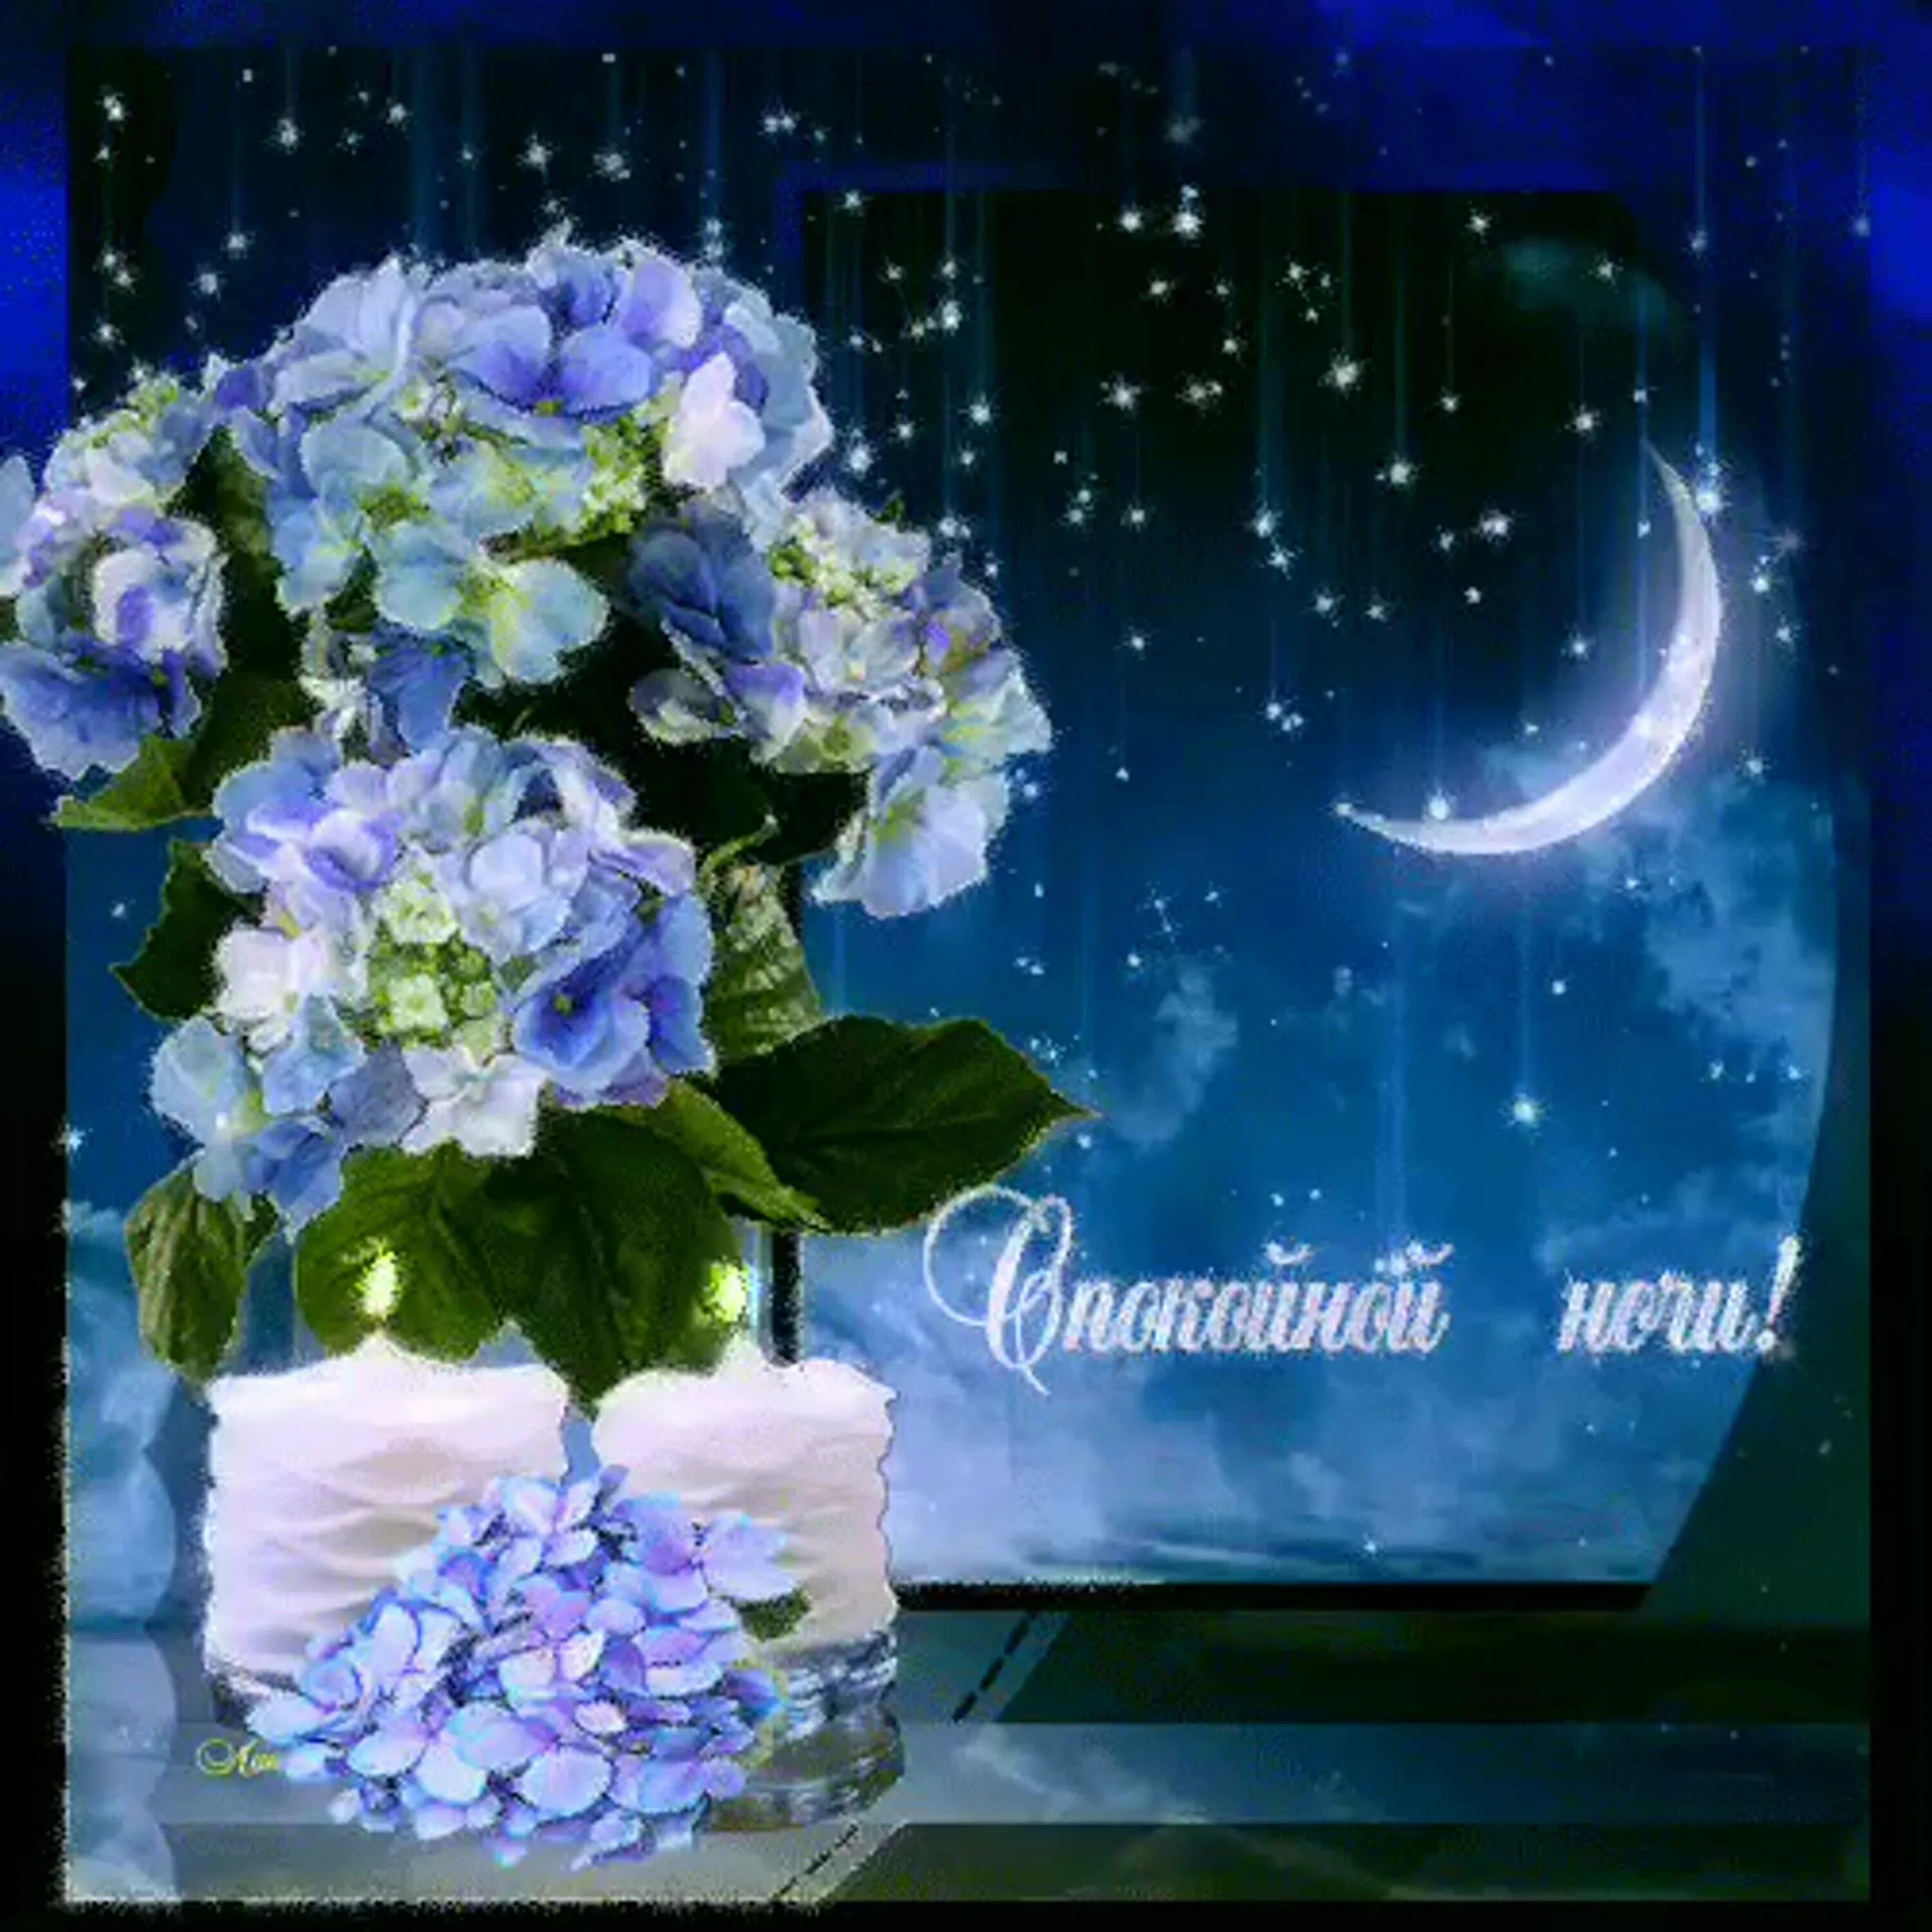 Мерцающие открытки добрых снов. Открытки доброй ночи. Прекрасная ночь. Чудесной ночи. Открытки спокойной ночи с цветами.